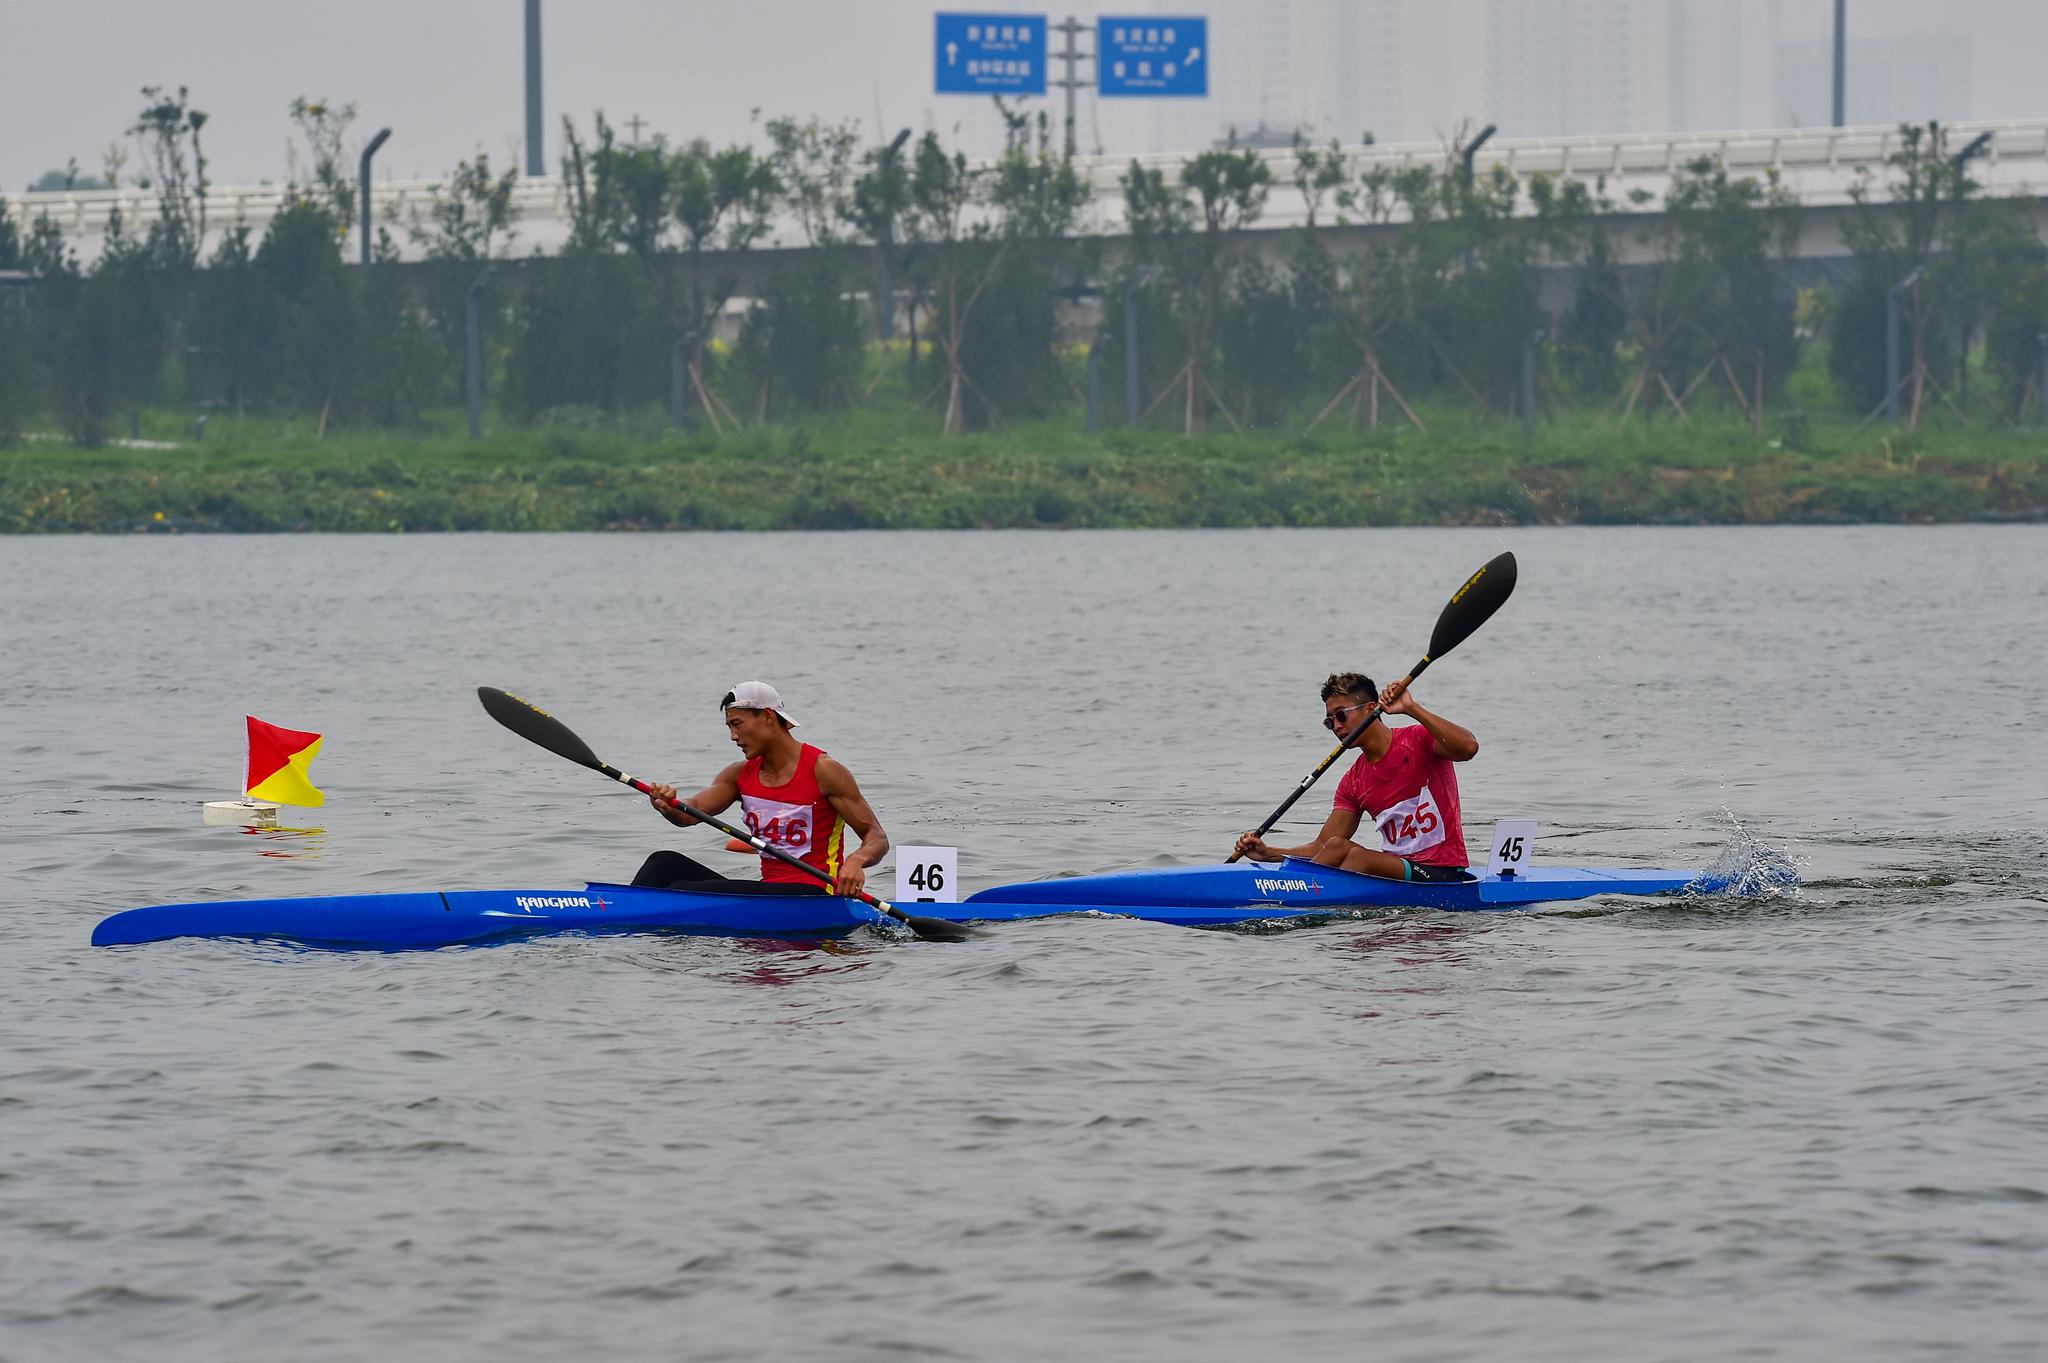 新华社发(刘亮亮摄)叶海文表示,皮划艇项目近年来在郑州市普及得很好